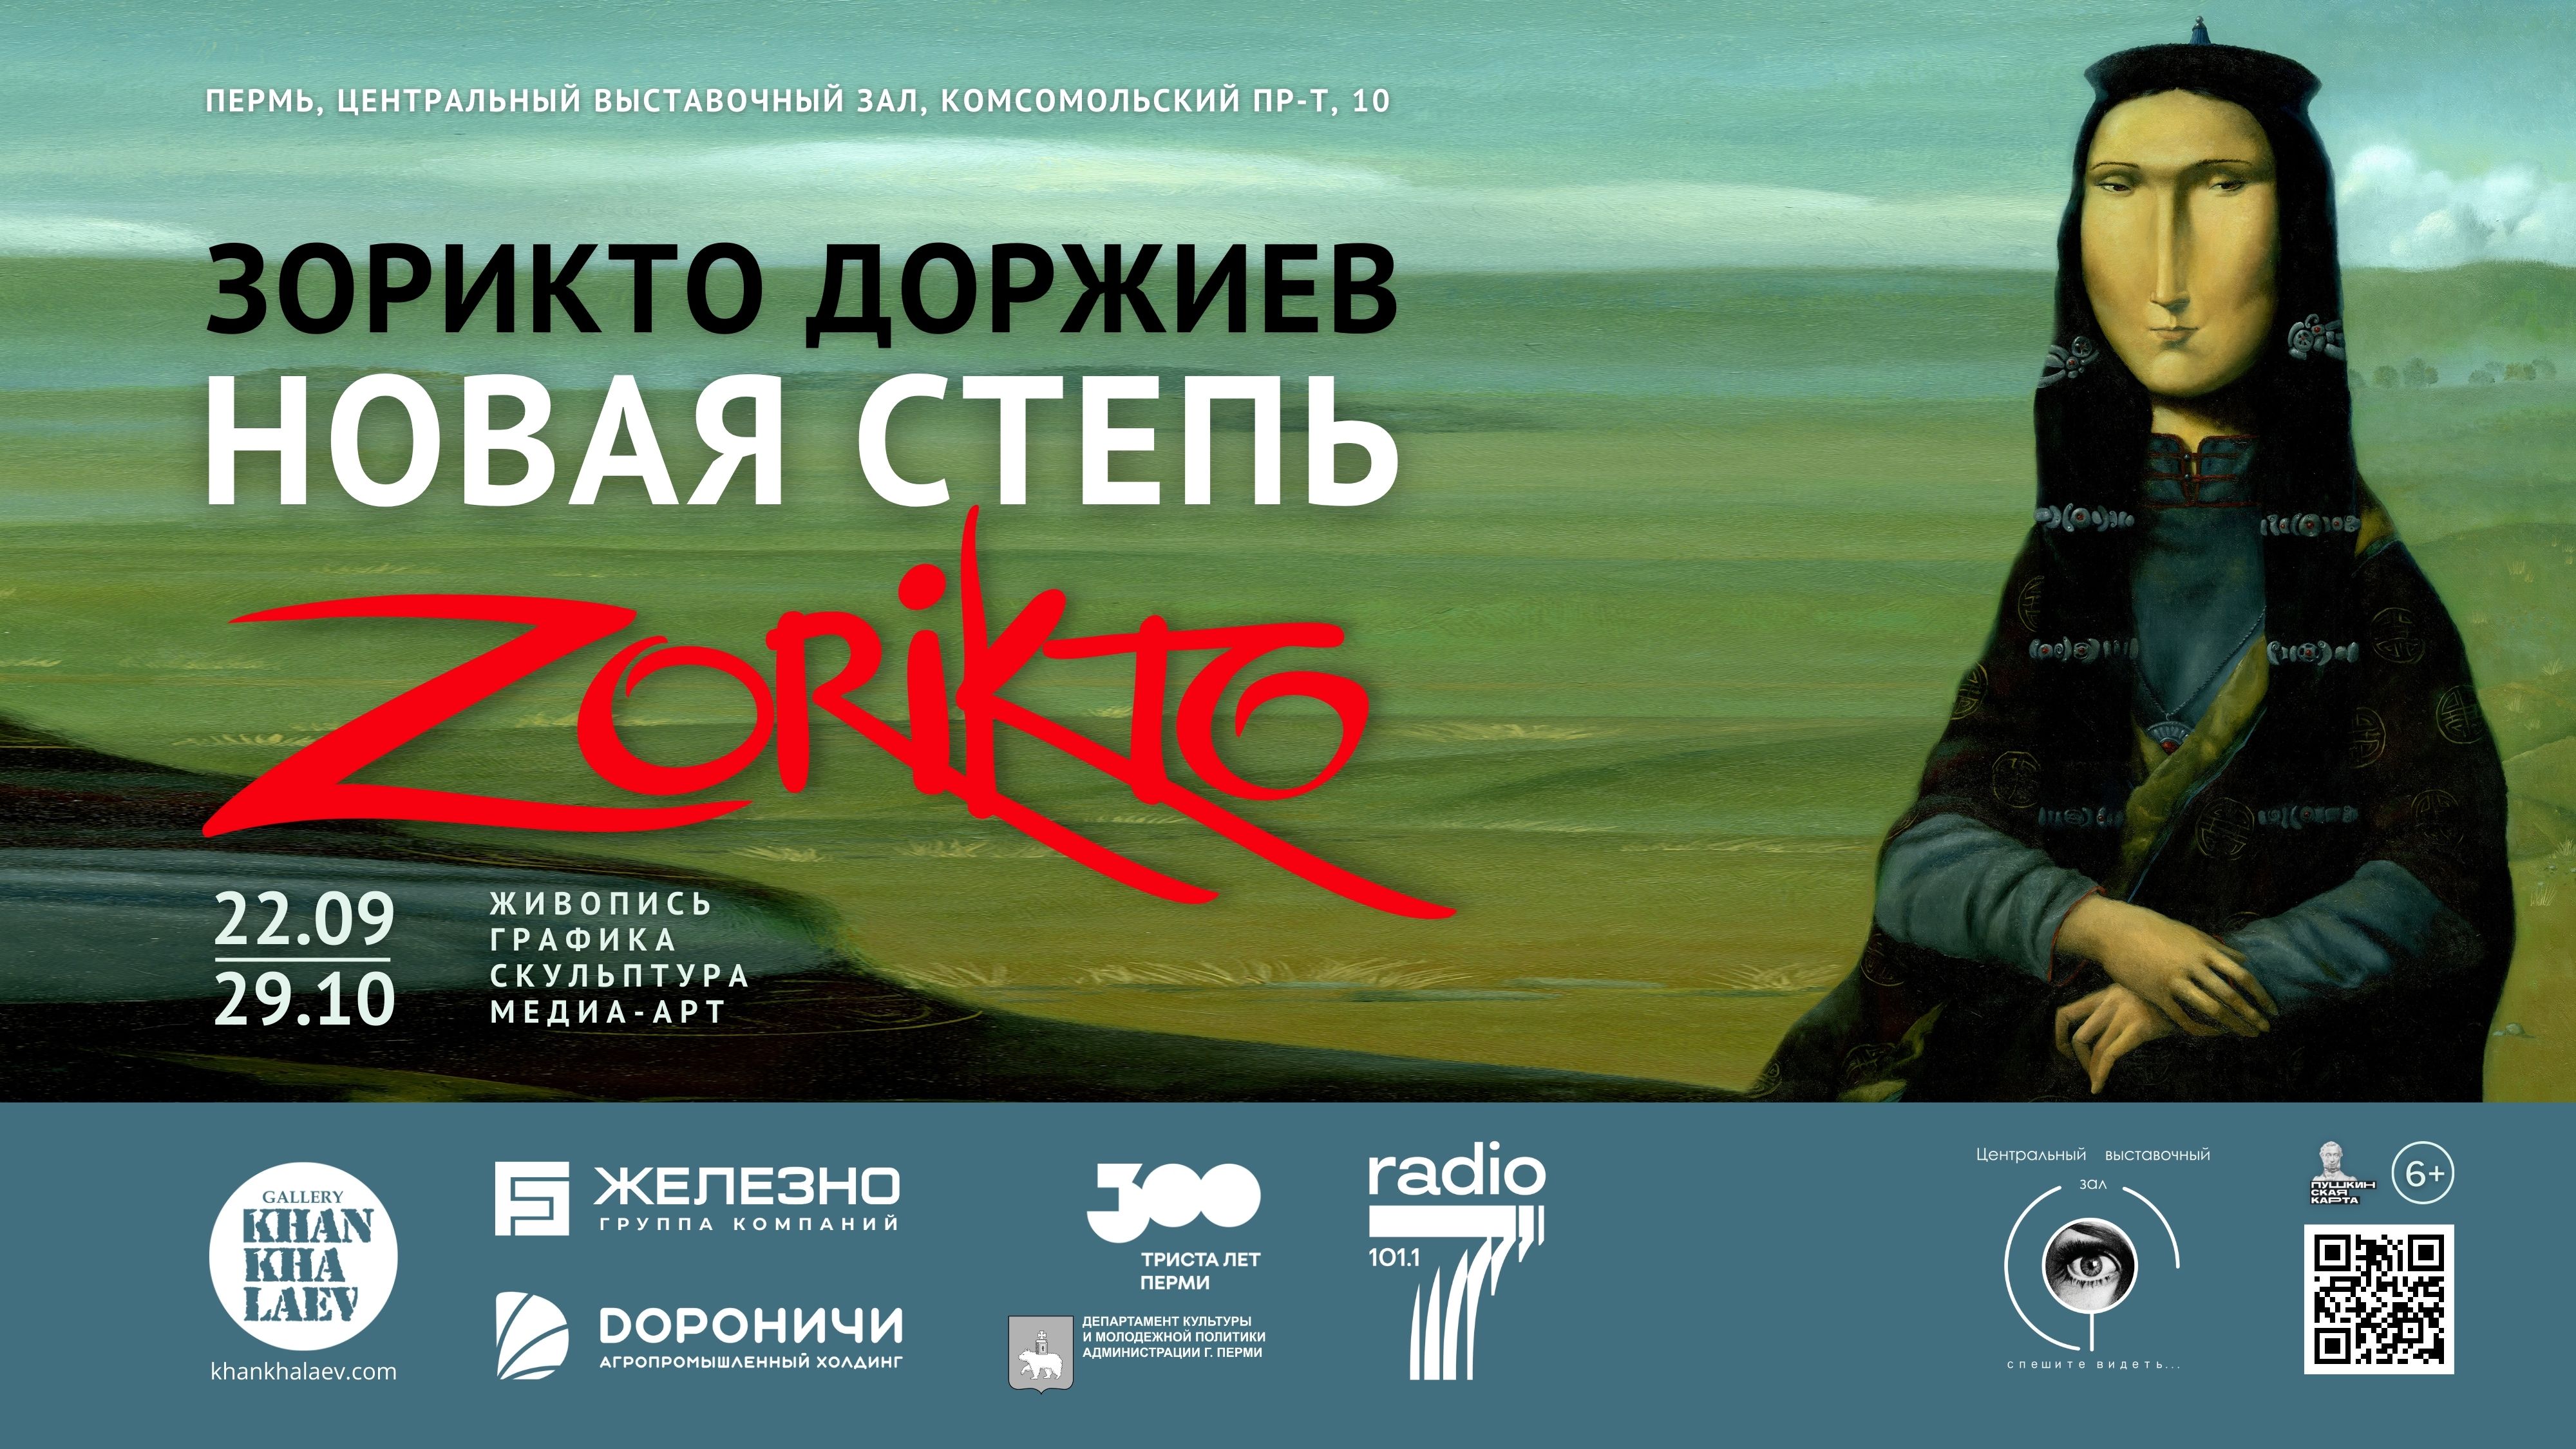 В Центральном выставочном зале откроется выставка Зорикто Доржиева